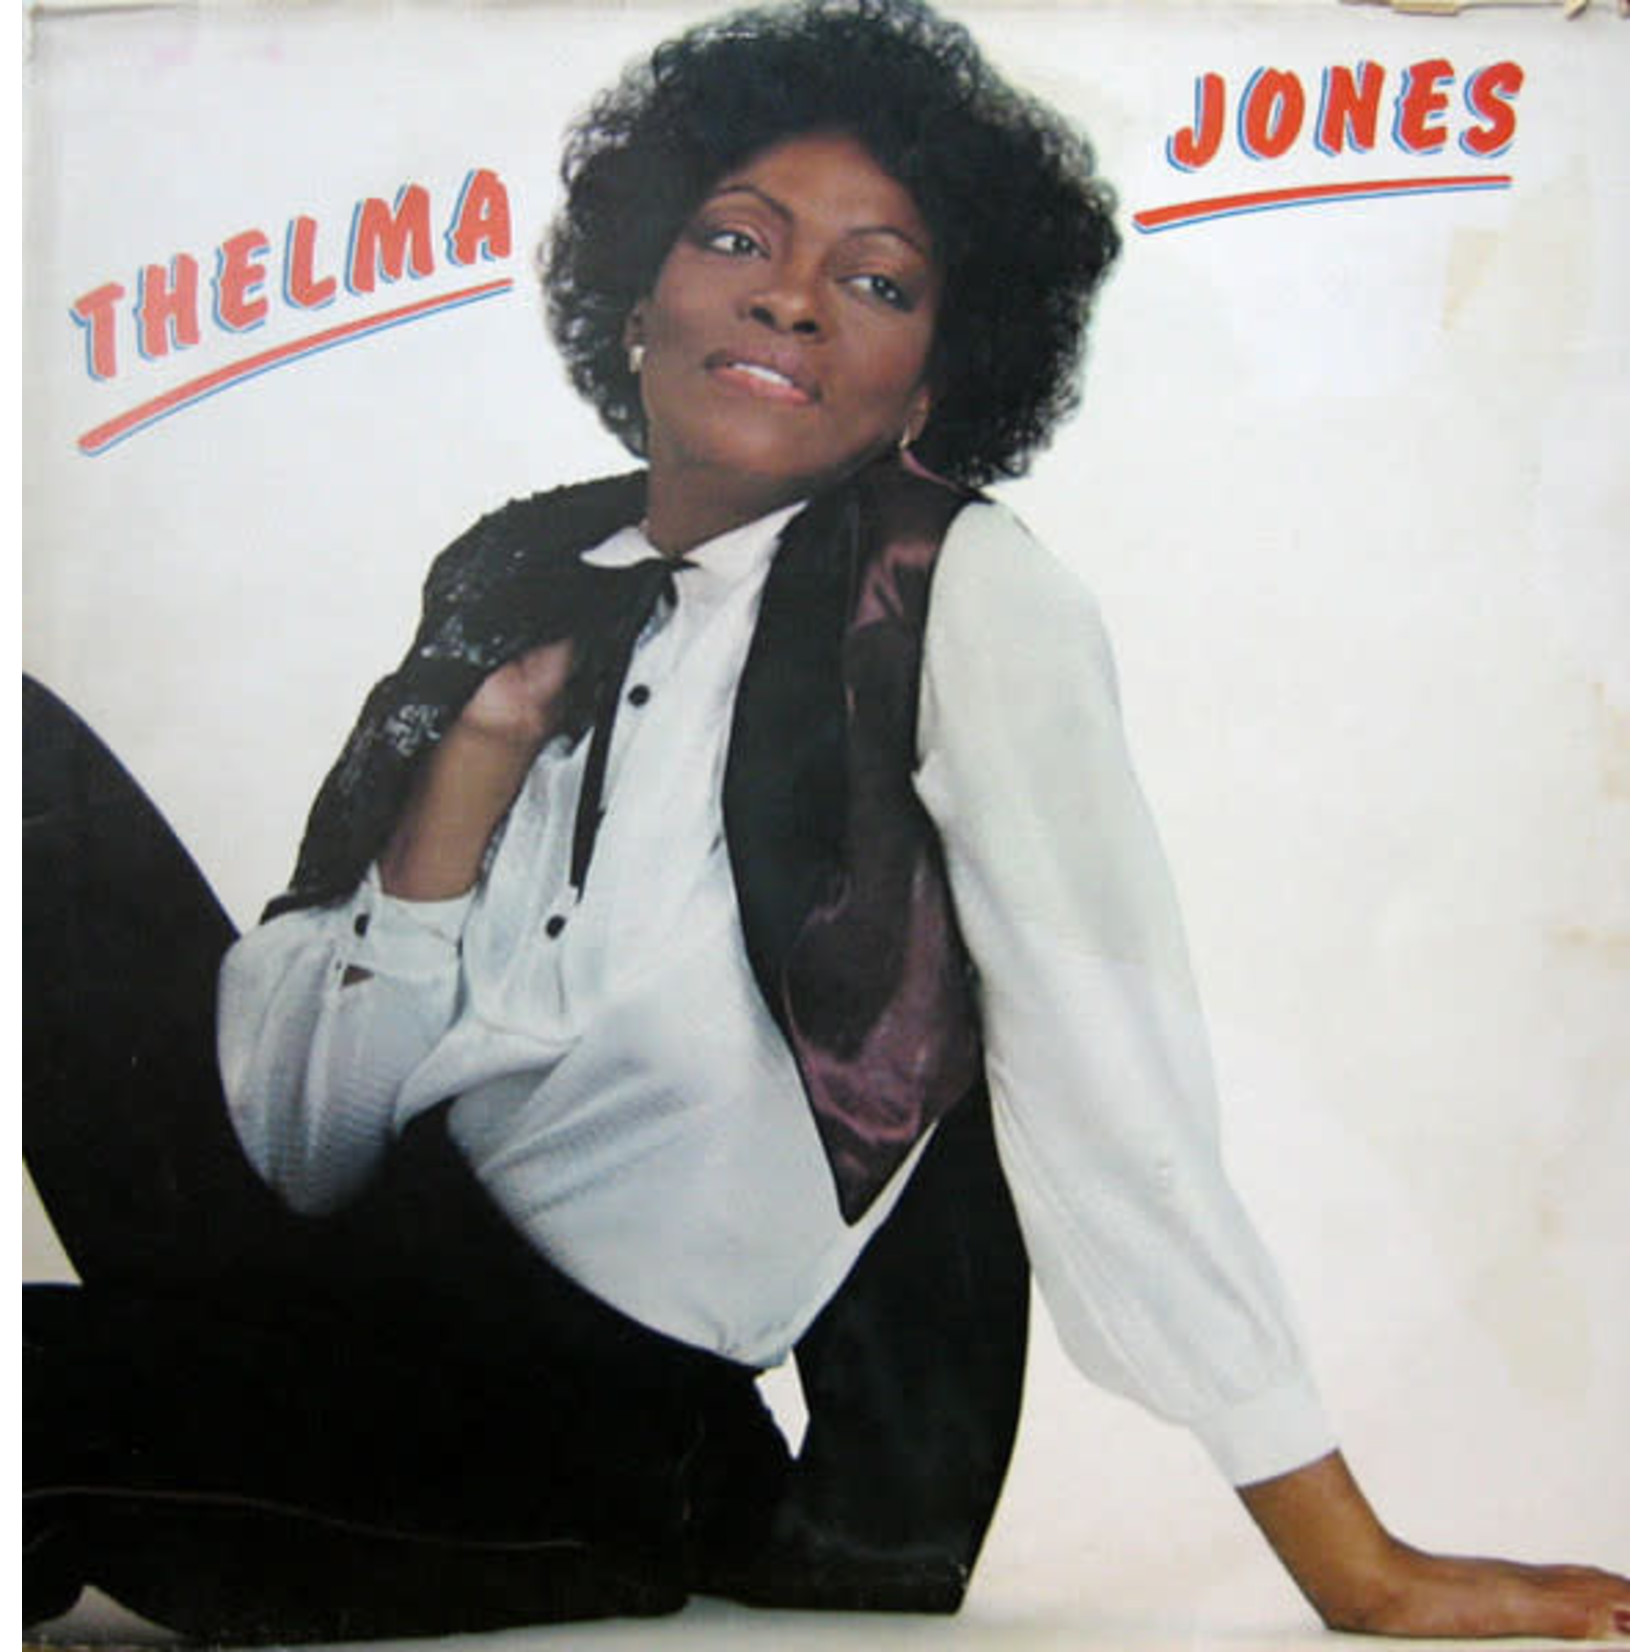 [Vintage] Thelma Jones - self-titled